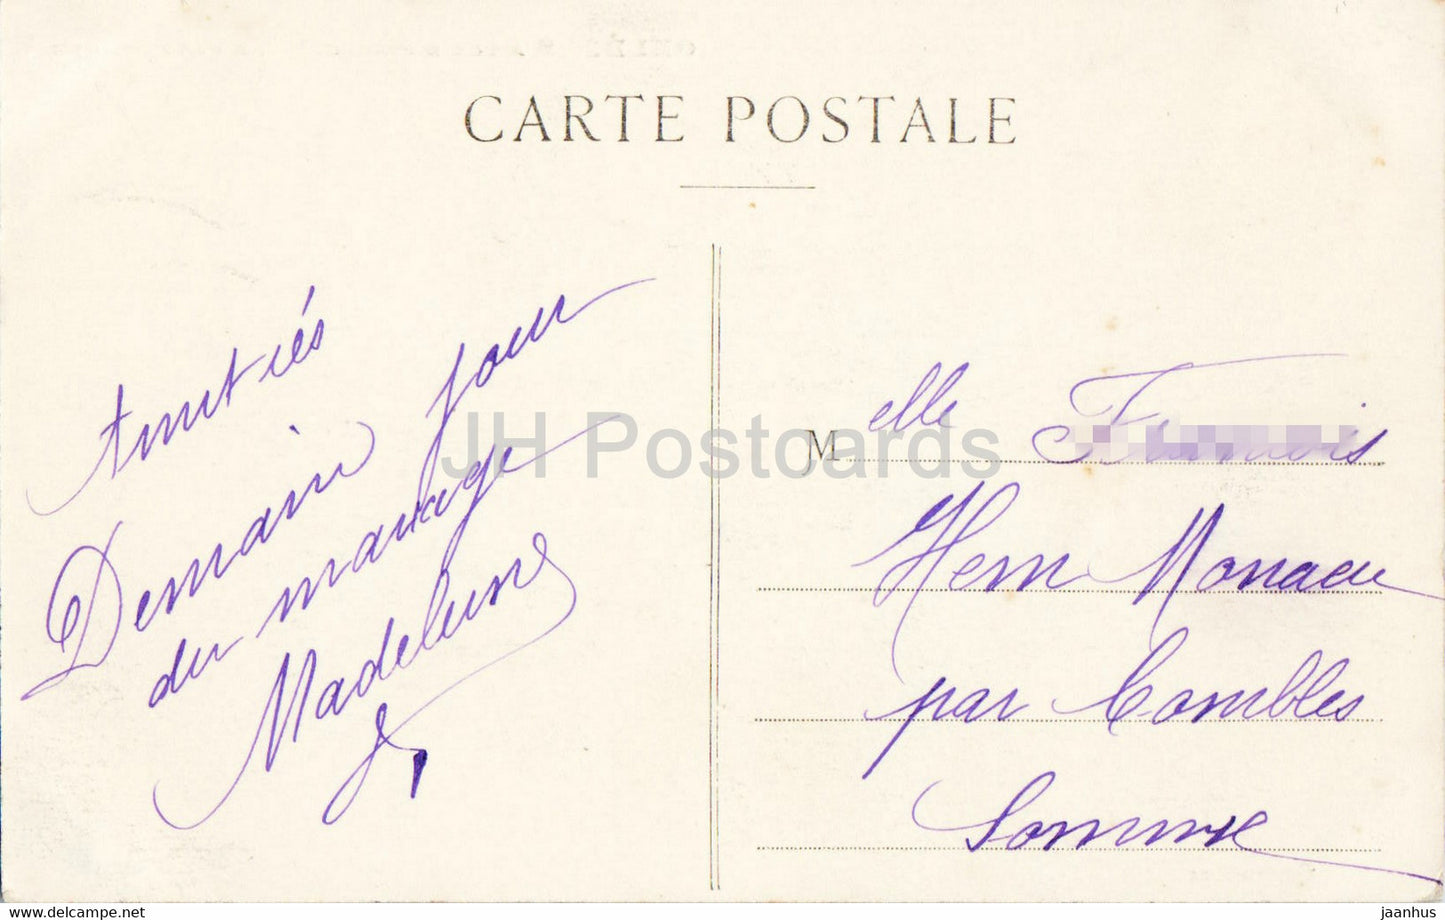 Orléans - a vol d'oiseau - La Cathédrale - cathédrale - carte postale ancienne - 1913 - France - utilisé